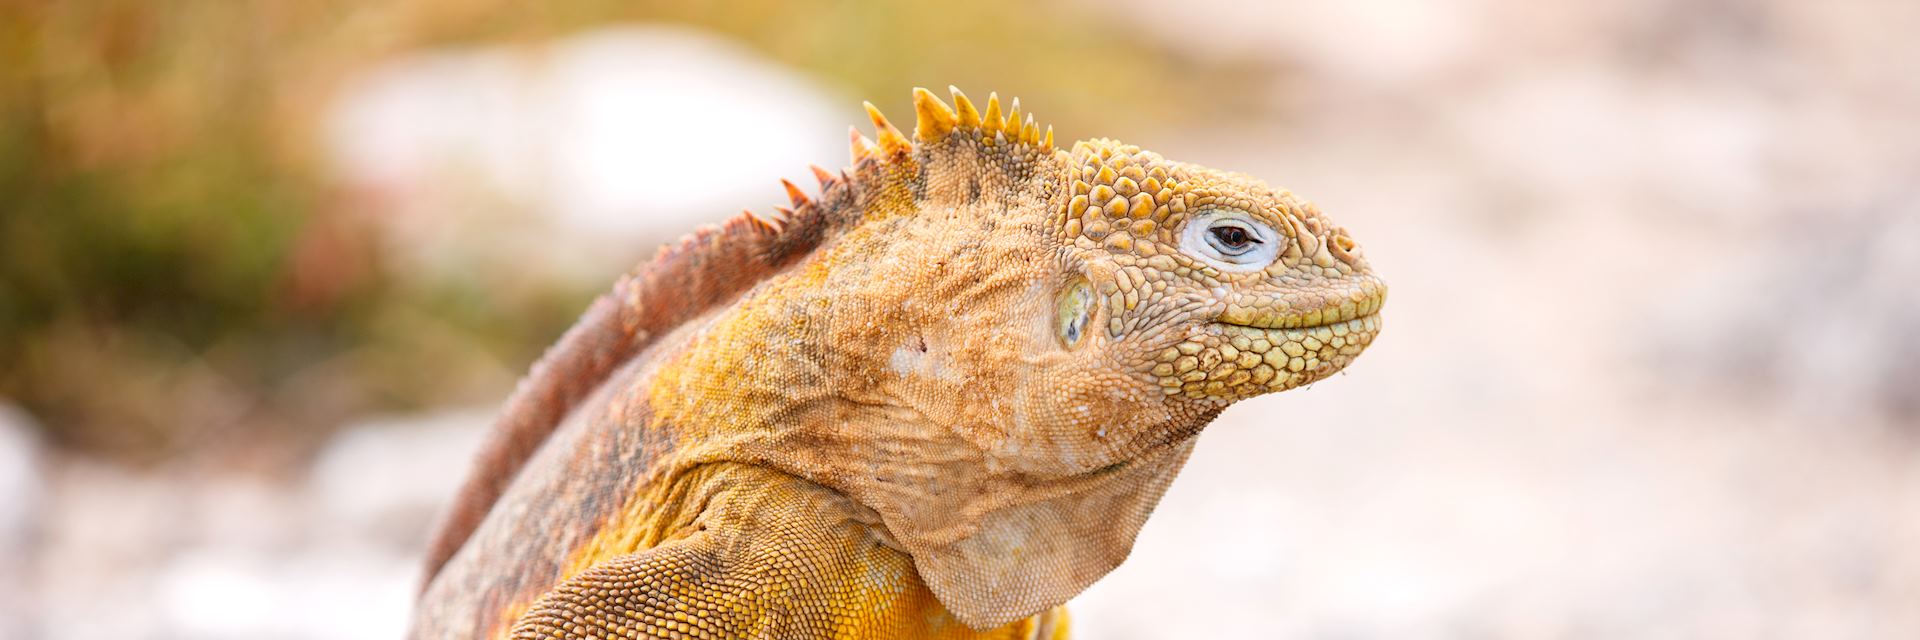 Land iguana, Galapagos Islands